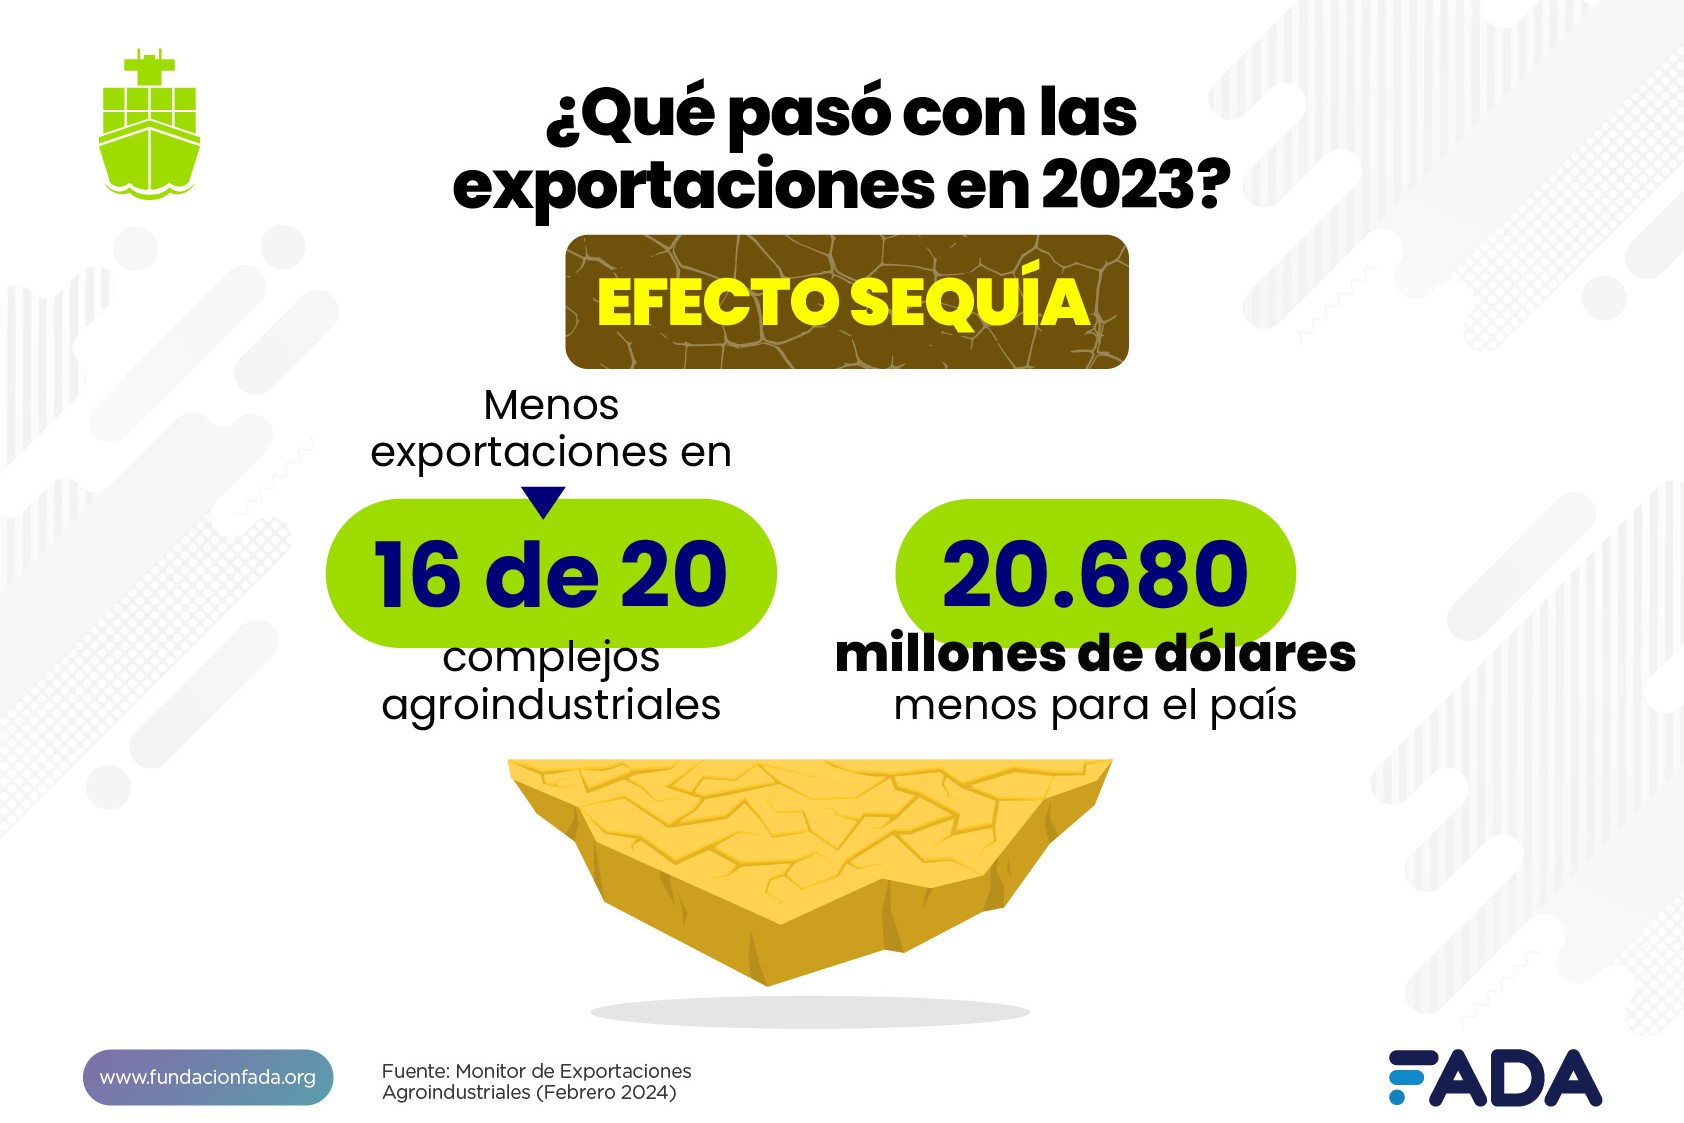 Monitor de Exportaciones Agroindustriales: ¿Cómo nos fue en el 2023?